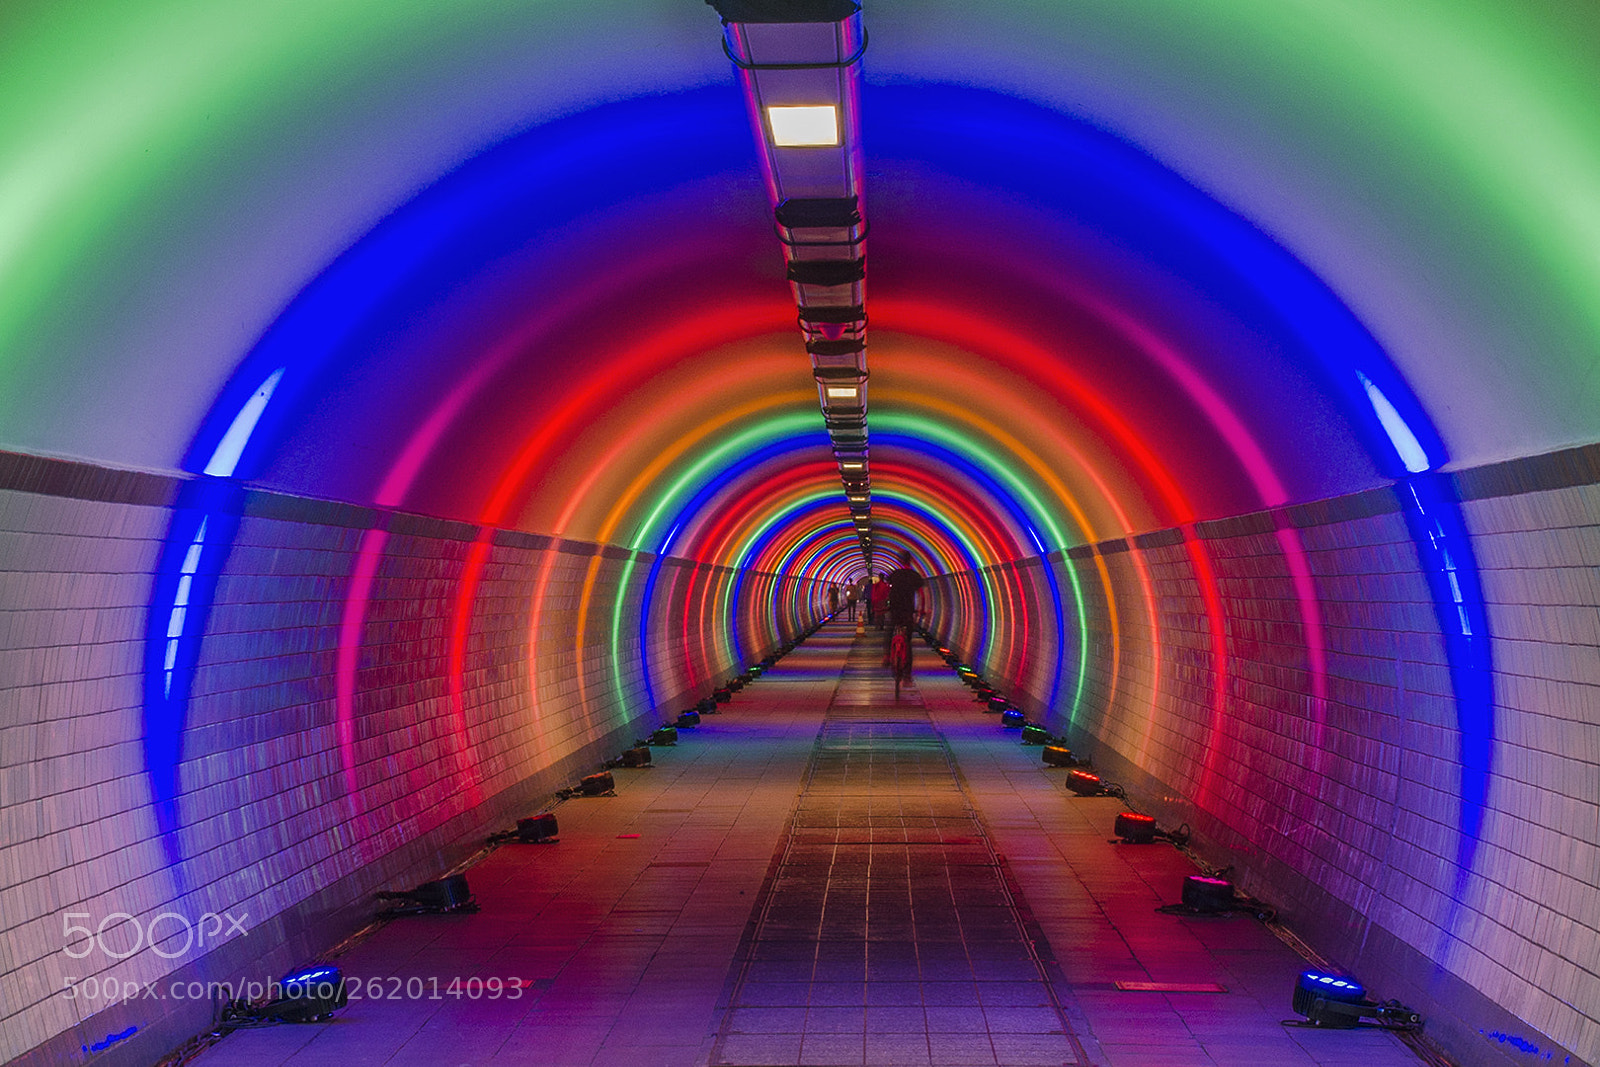 Nikon D7000 sample photo. Rainbow tunnel photography